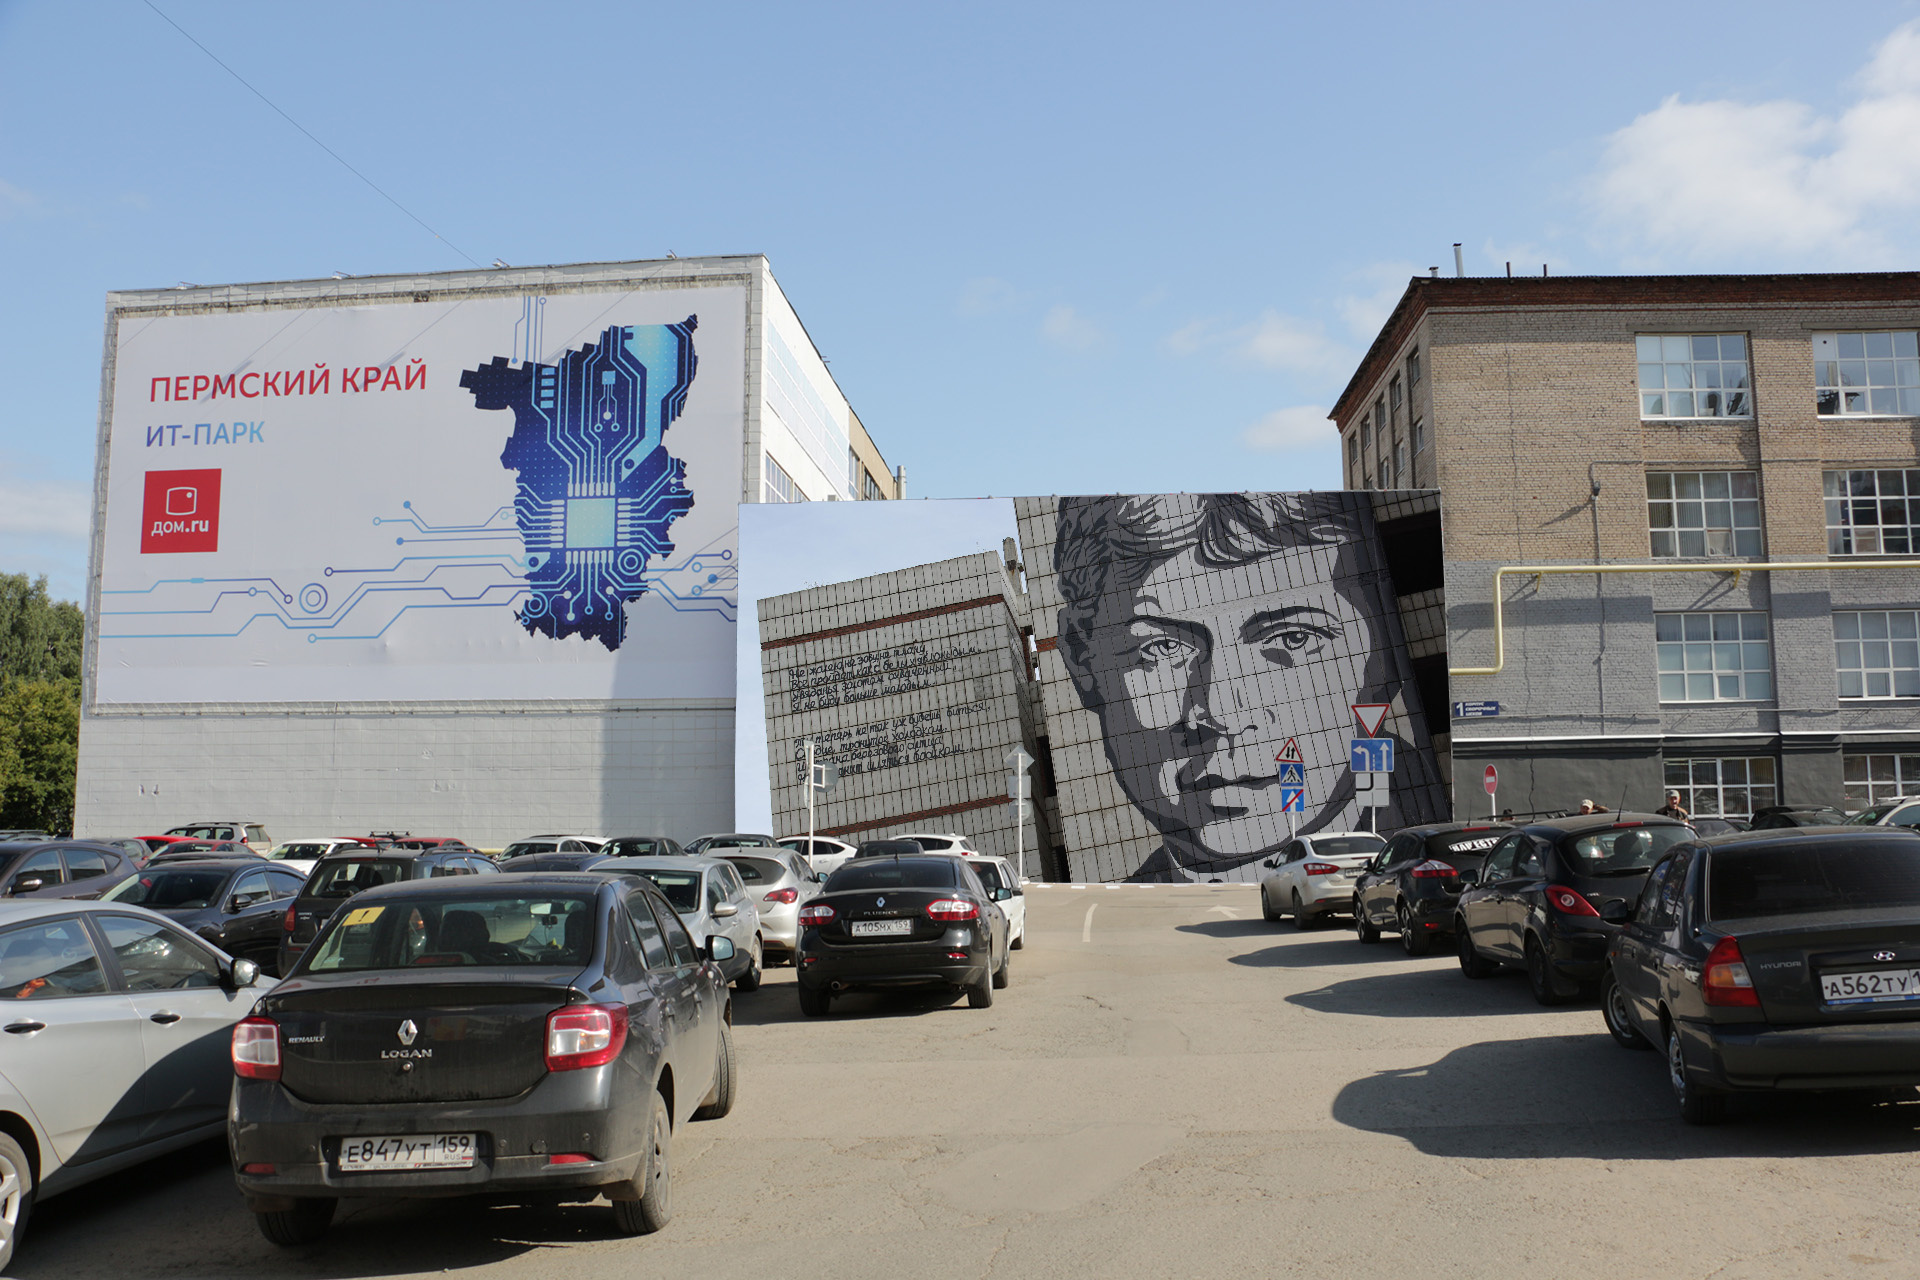 Знаменитый портрет Сергея Есенина, скорее всего, понравился бы президенту больше серой улицы